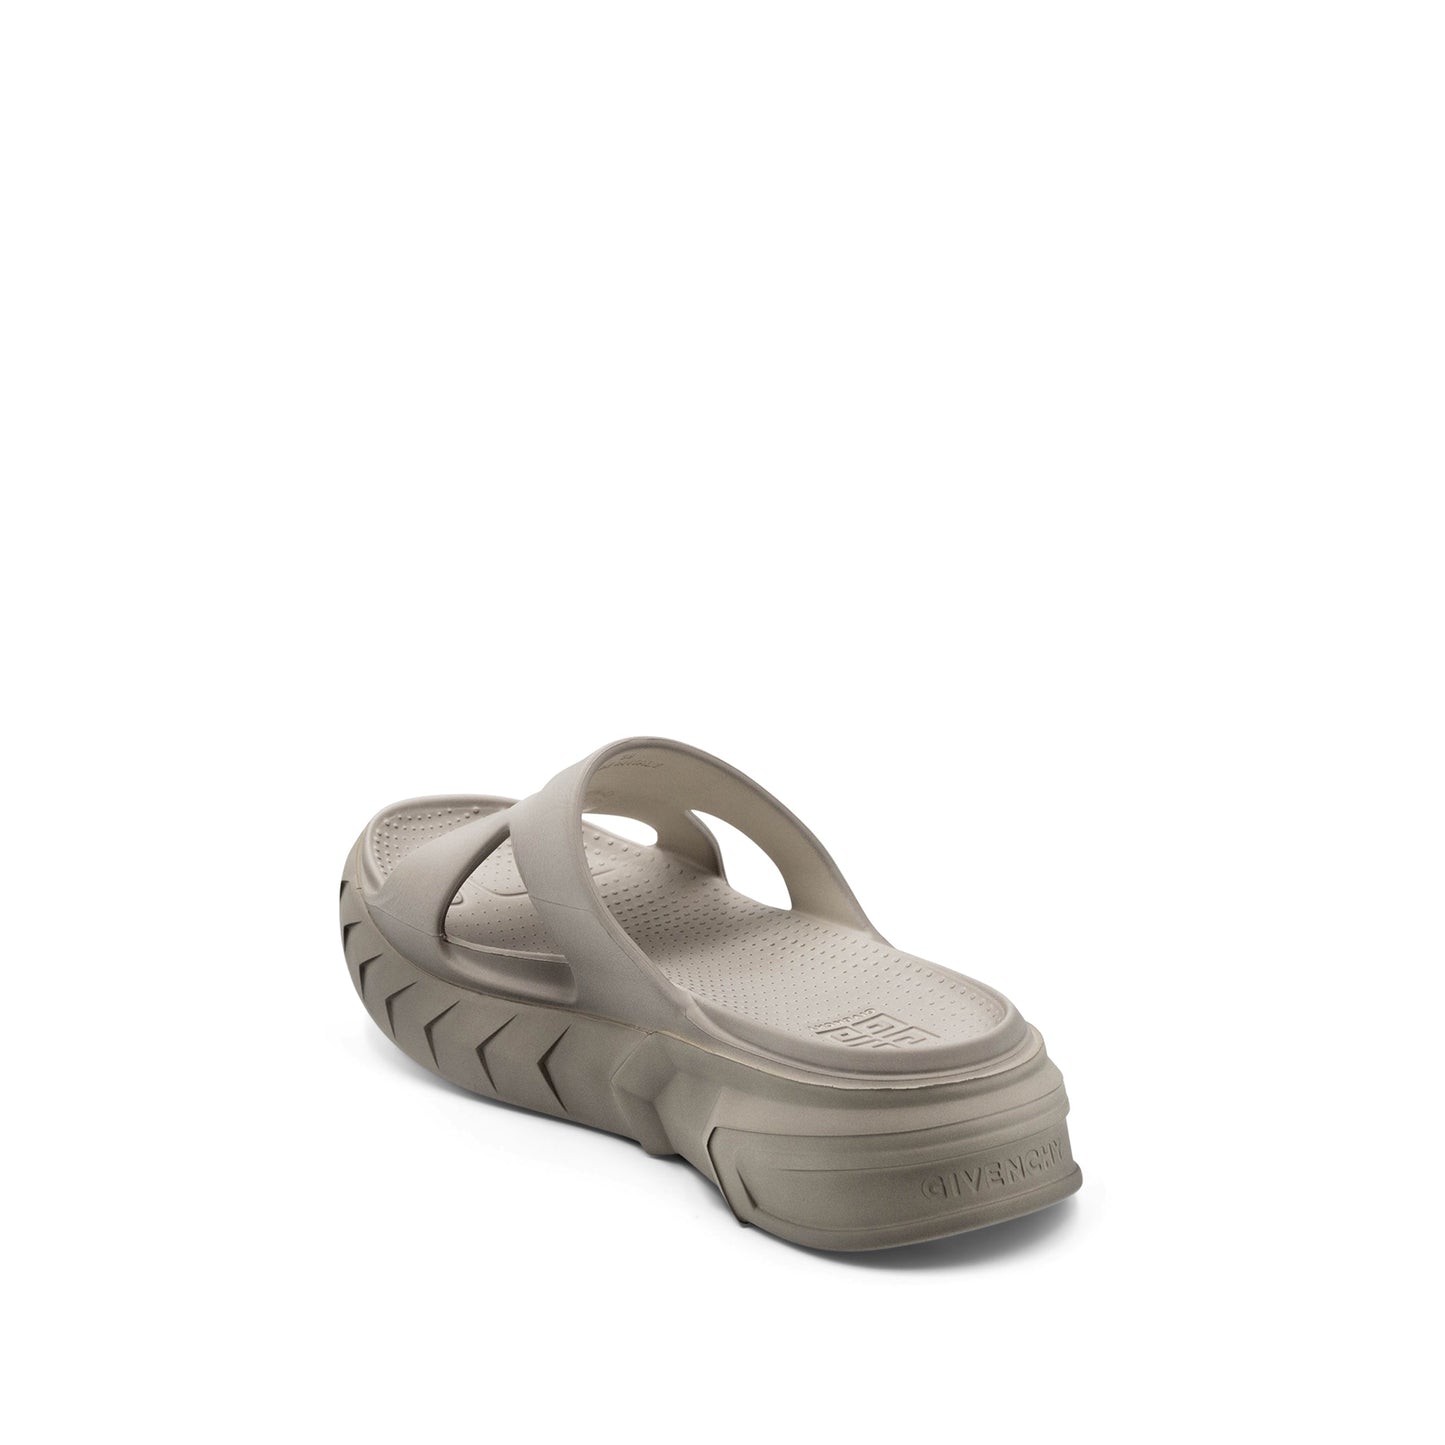 Marshmallow Slider Sandals in Cream